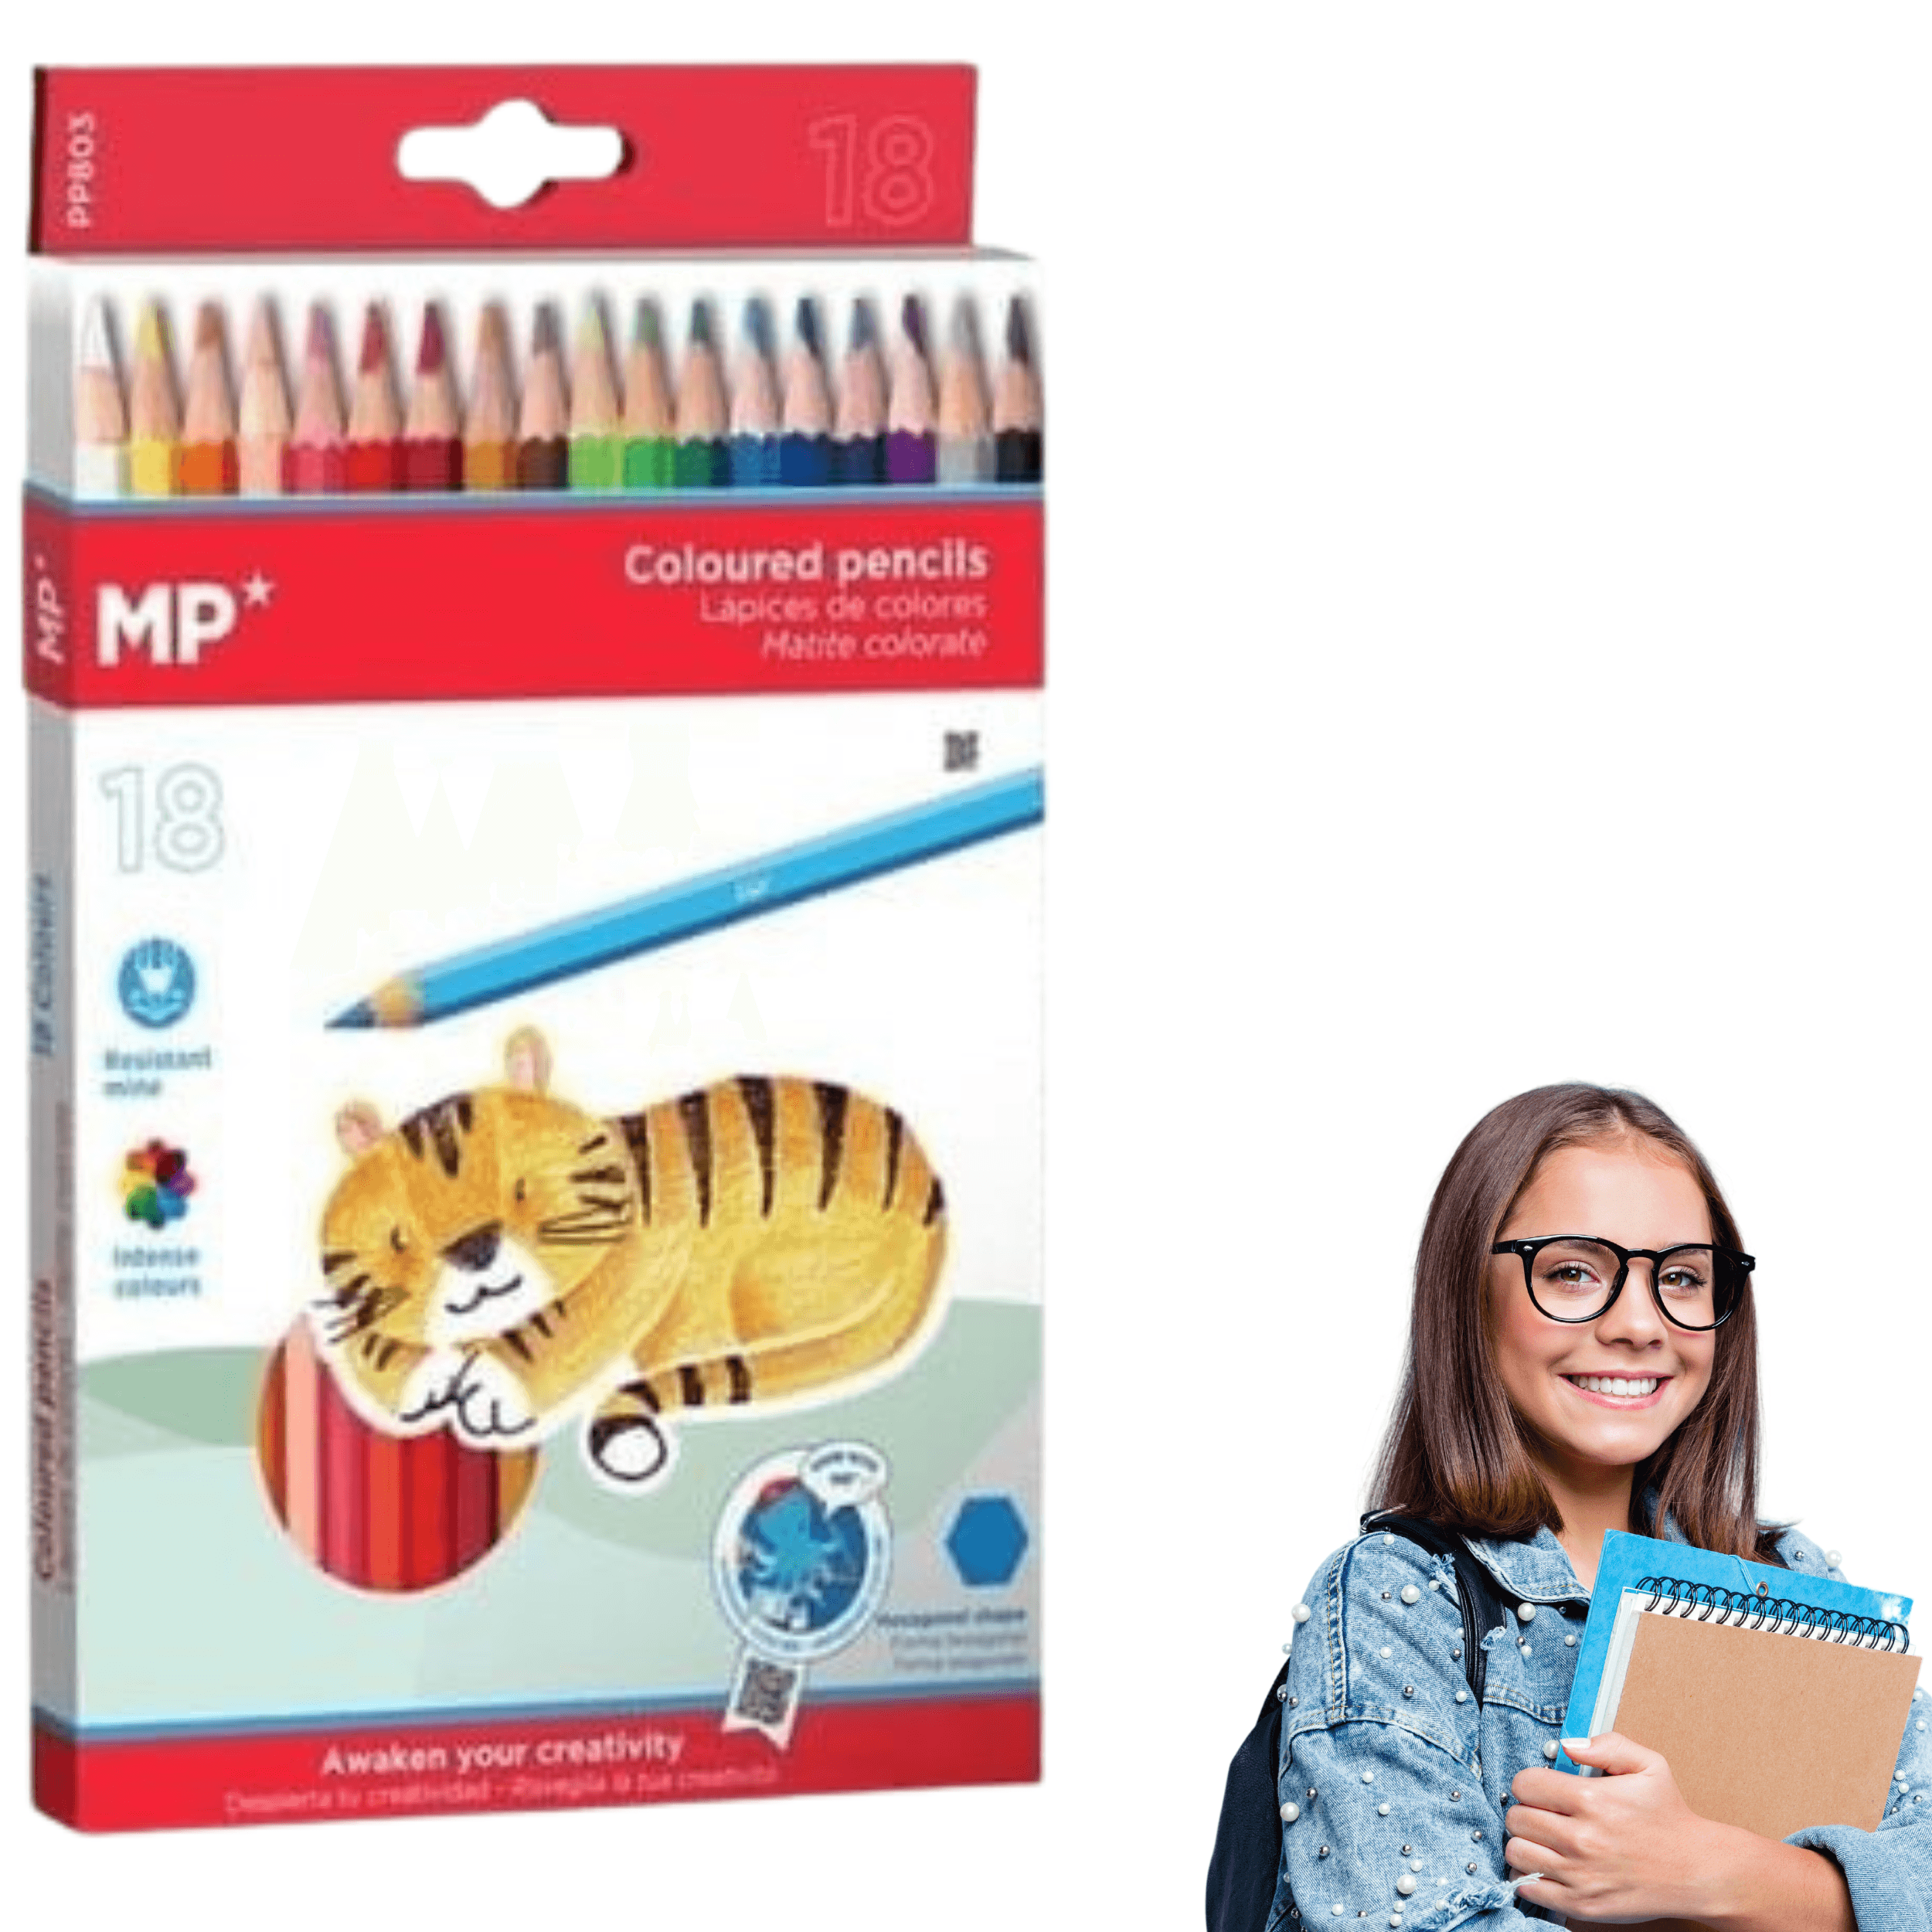 Colorful pencils MP 18 pcs